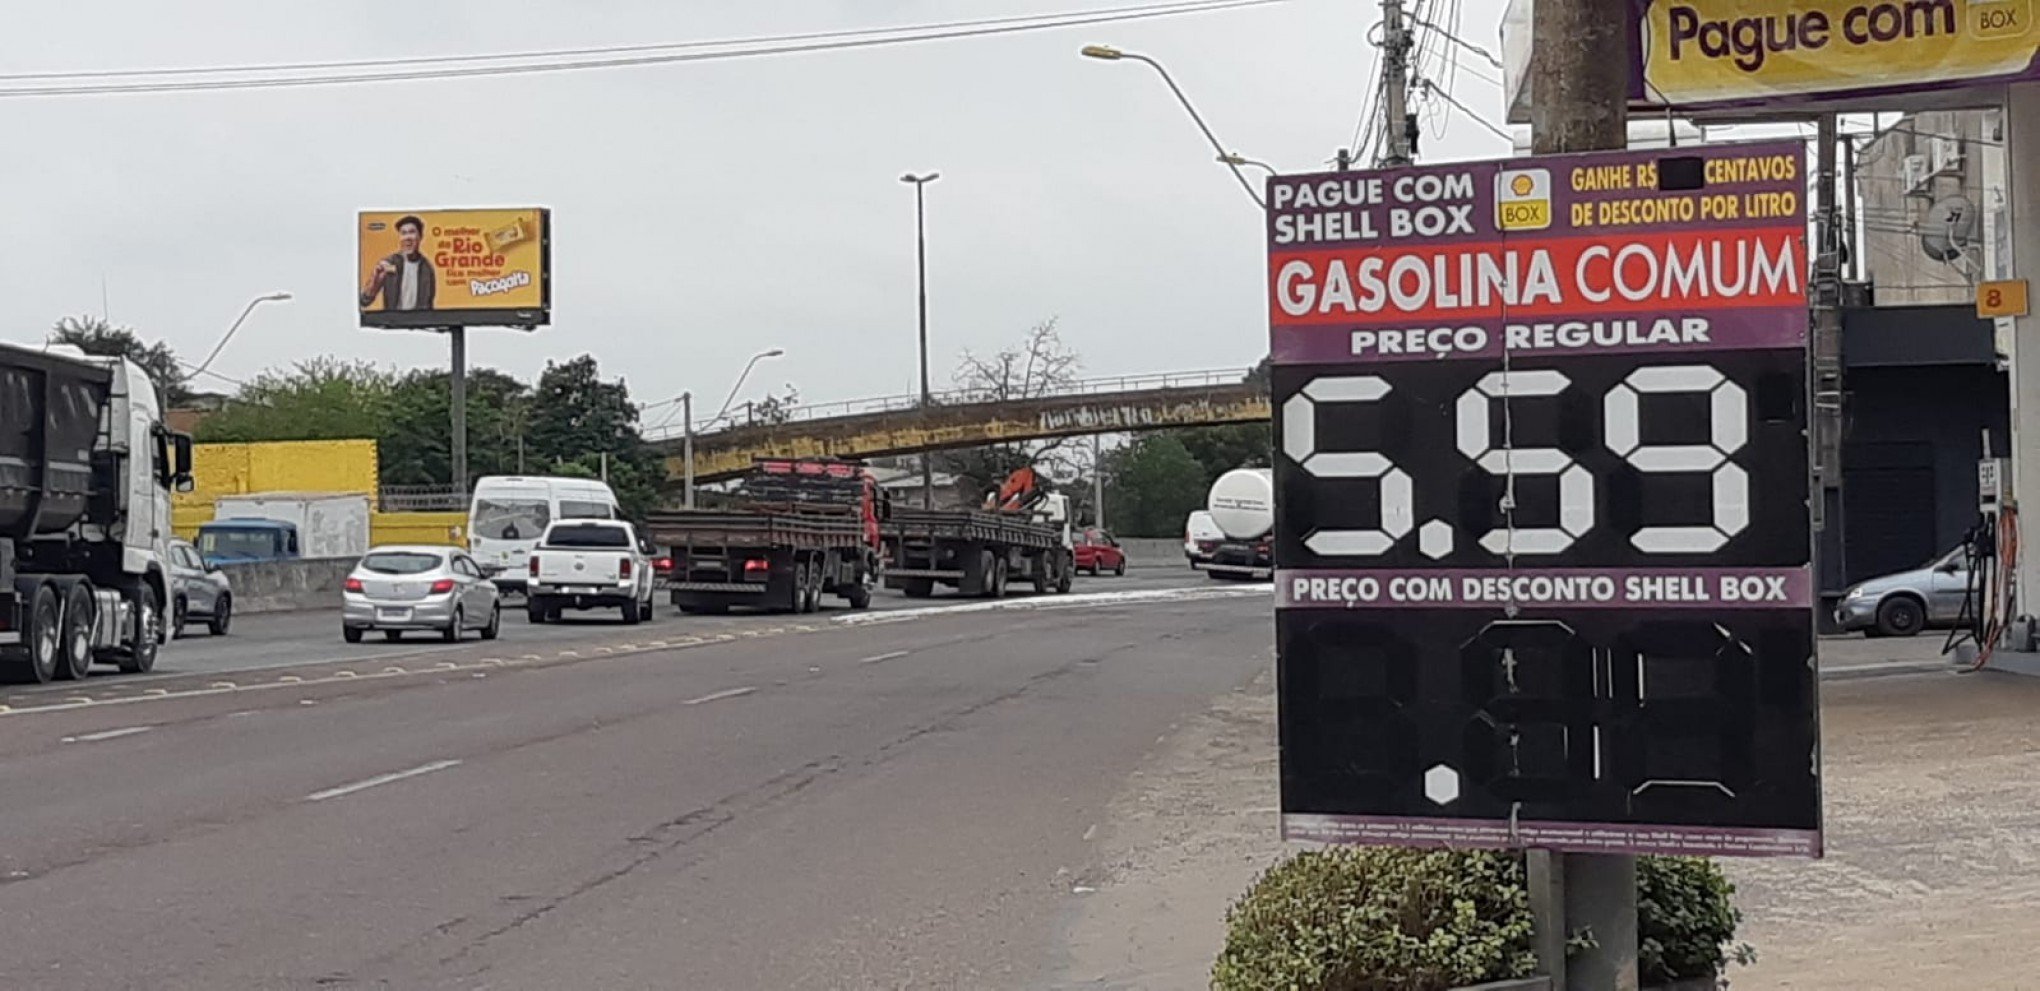 Preço da gasolina comum aumenta mais de 50 centavos de um dia para o outro na região